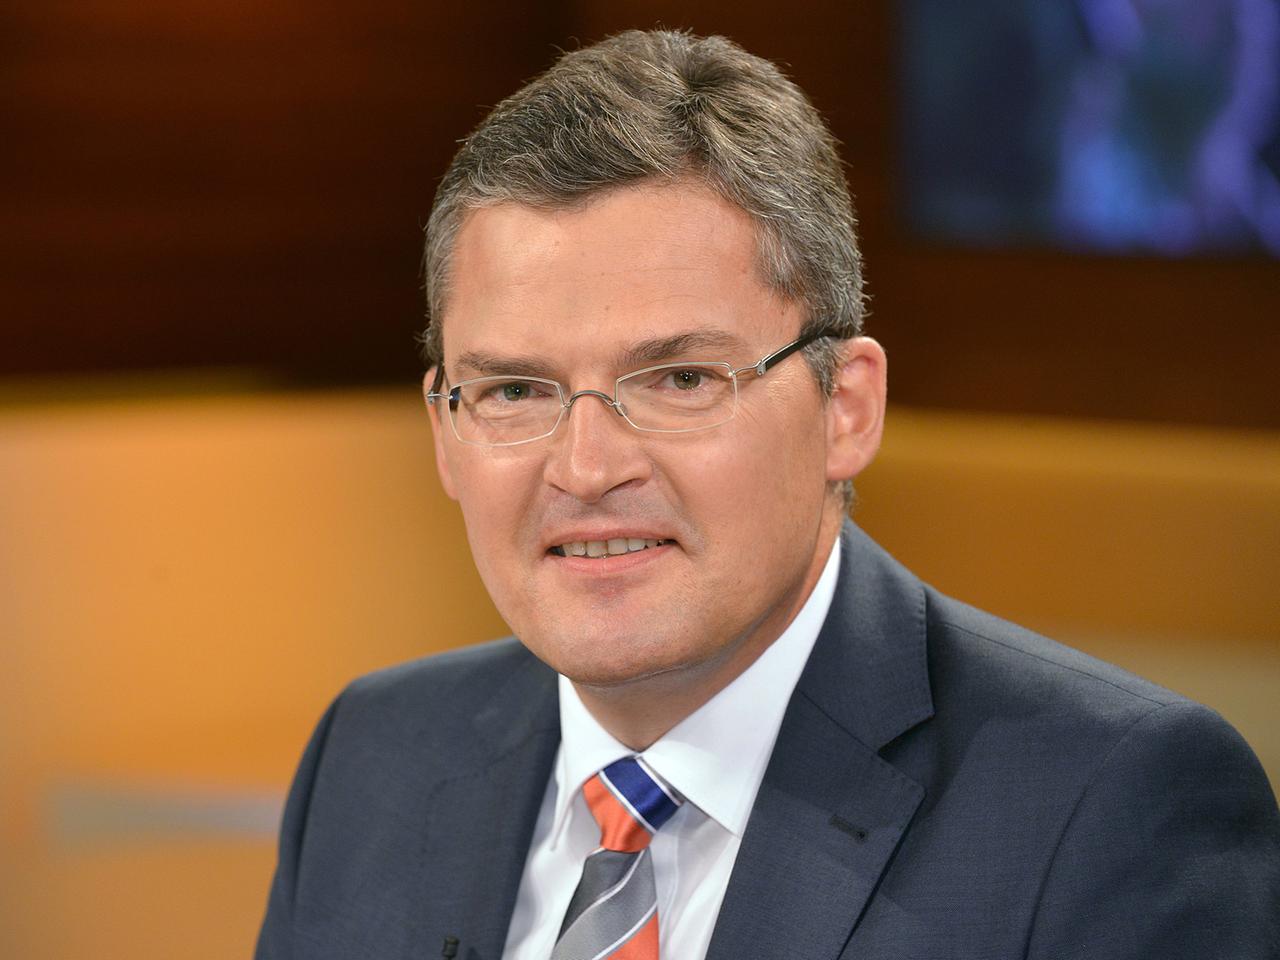 Roderich Kiesewetter, Oberst a.D., Mitglied im Auswärtigen Ausschuss des Bundestages (CDU), ist zu Gast in der Talkshow Anne WIll